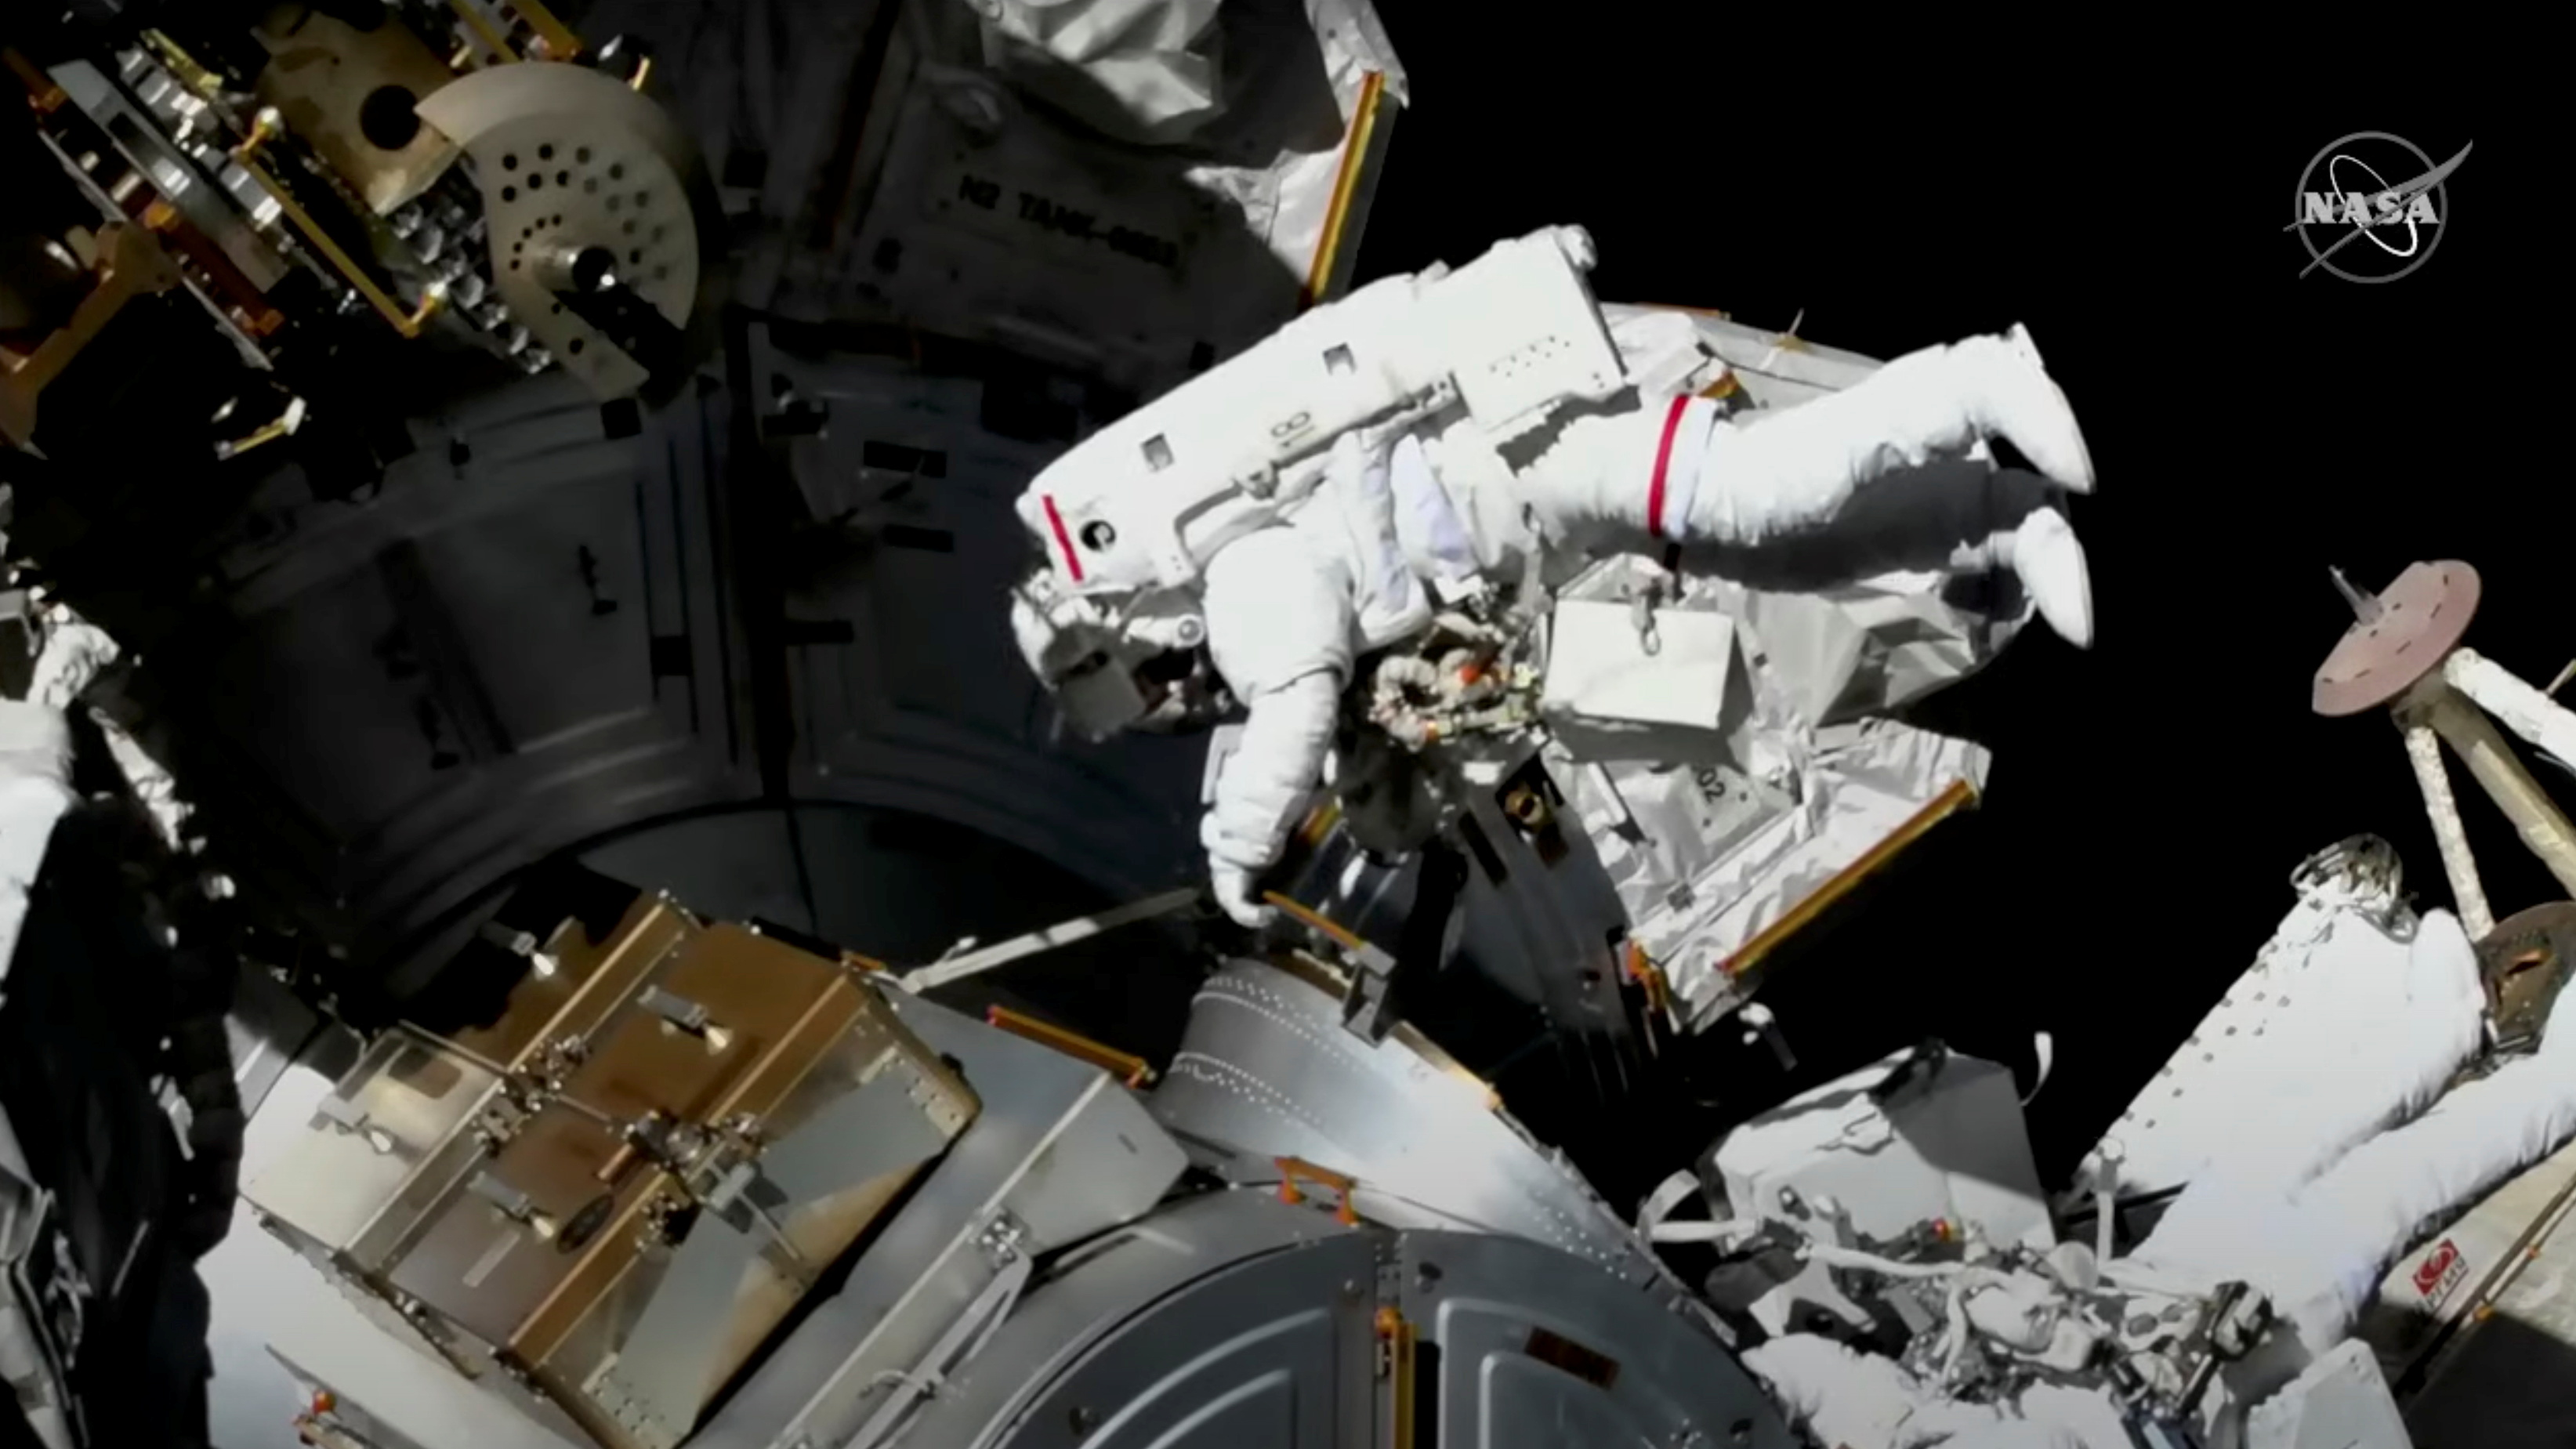 ไฟล์ภาพ: นักบินอวกาศทำ spacewalk เพื่อเปลี่ยนเสาอากาศที่ผิดพลาดบนสถานีอวกาศนานาชาติ (ISS) ในภาพ 2 ธันวาคม 2564 (NASA TV / REUTERS)